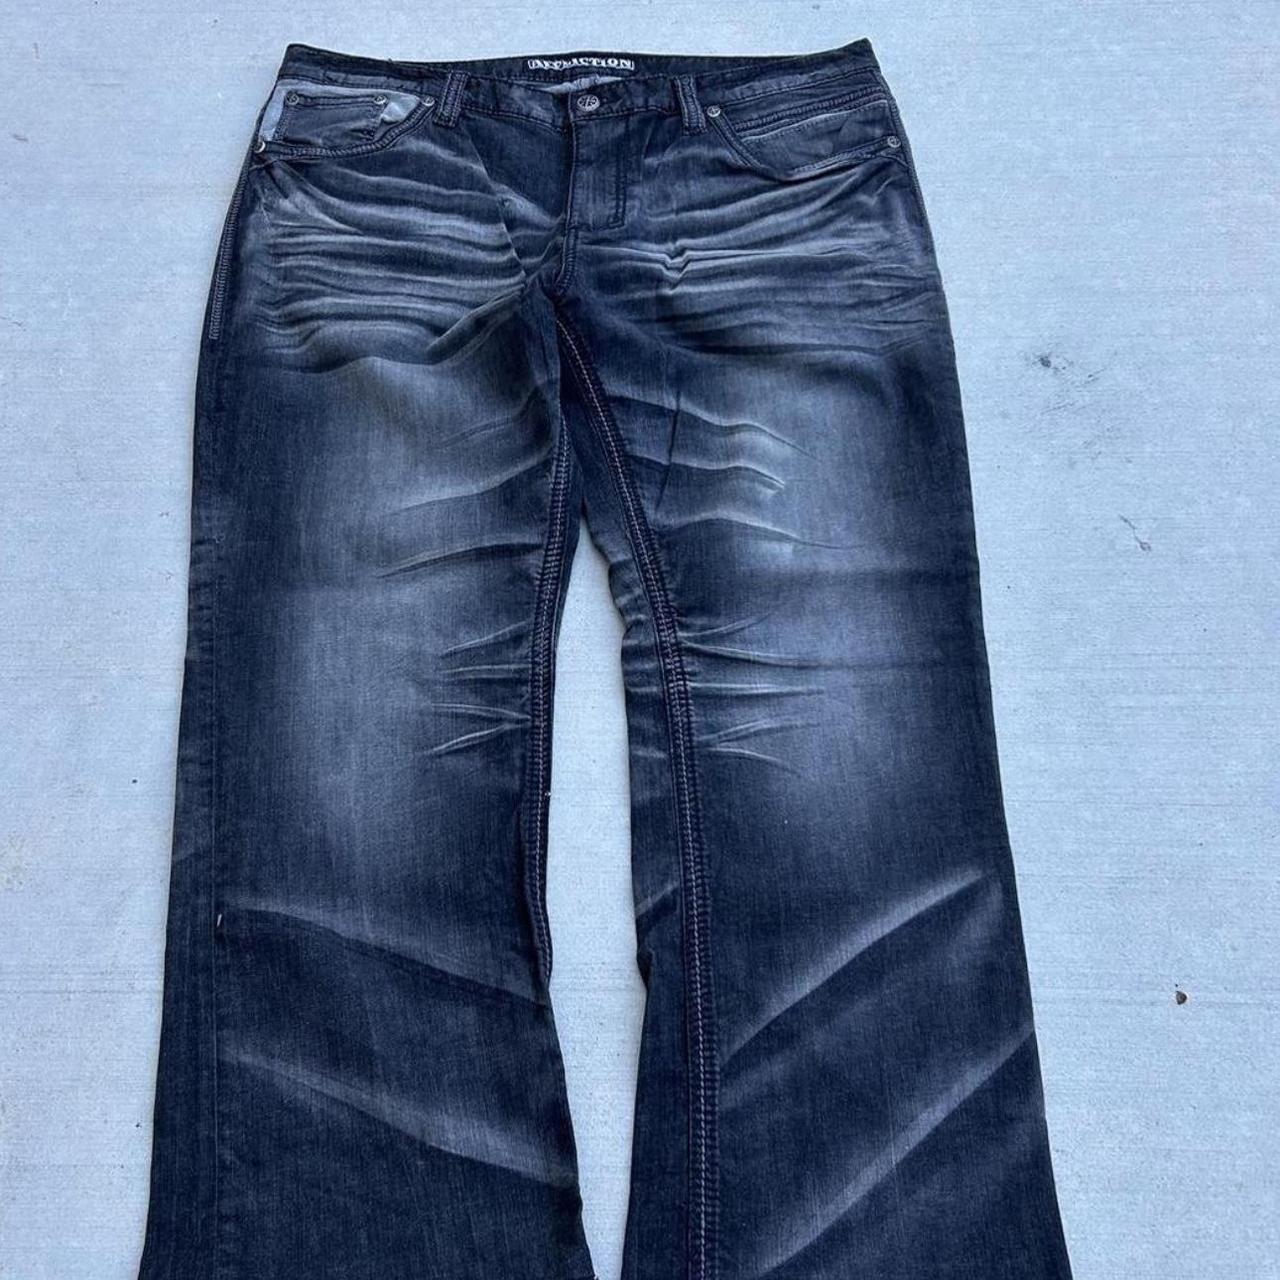 15% DISCOUNT ON BUNDLES Vintage Affliction Jeans... - Depop